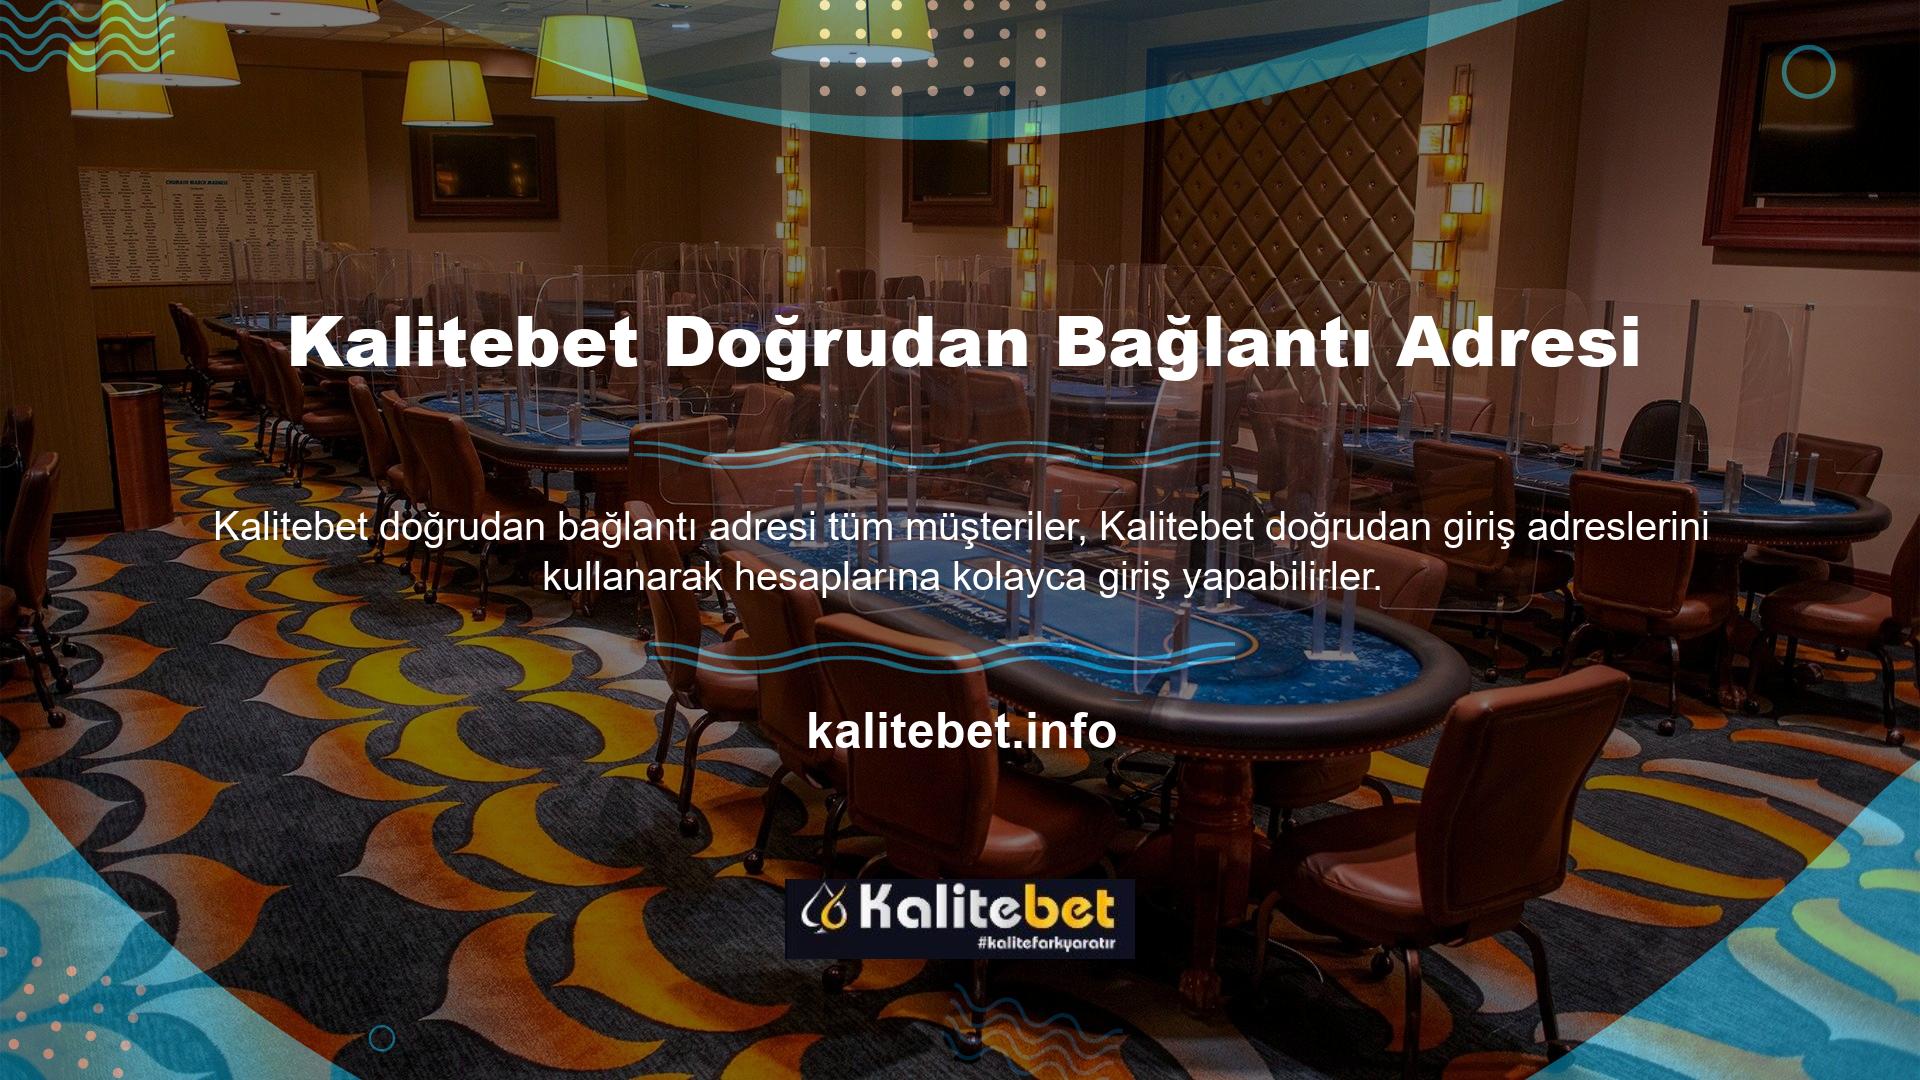 Lisans numarası Türkiye'de geçerli olmadığı için sitenin ana sayfası bloke edilmiştir